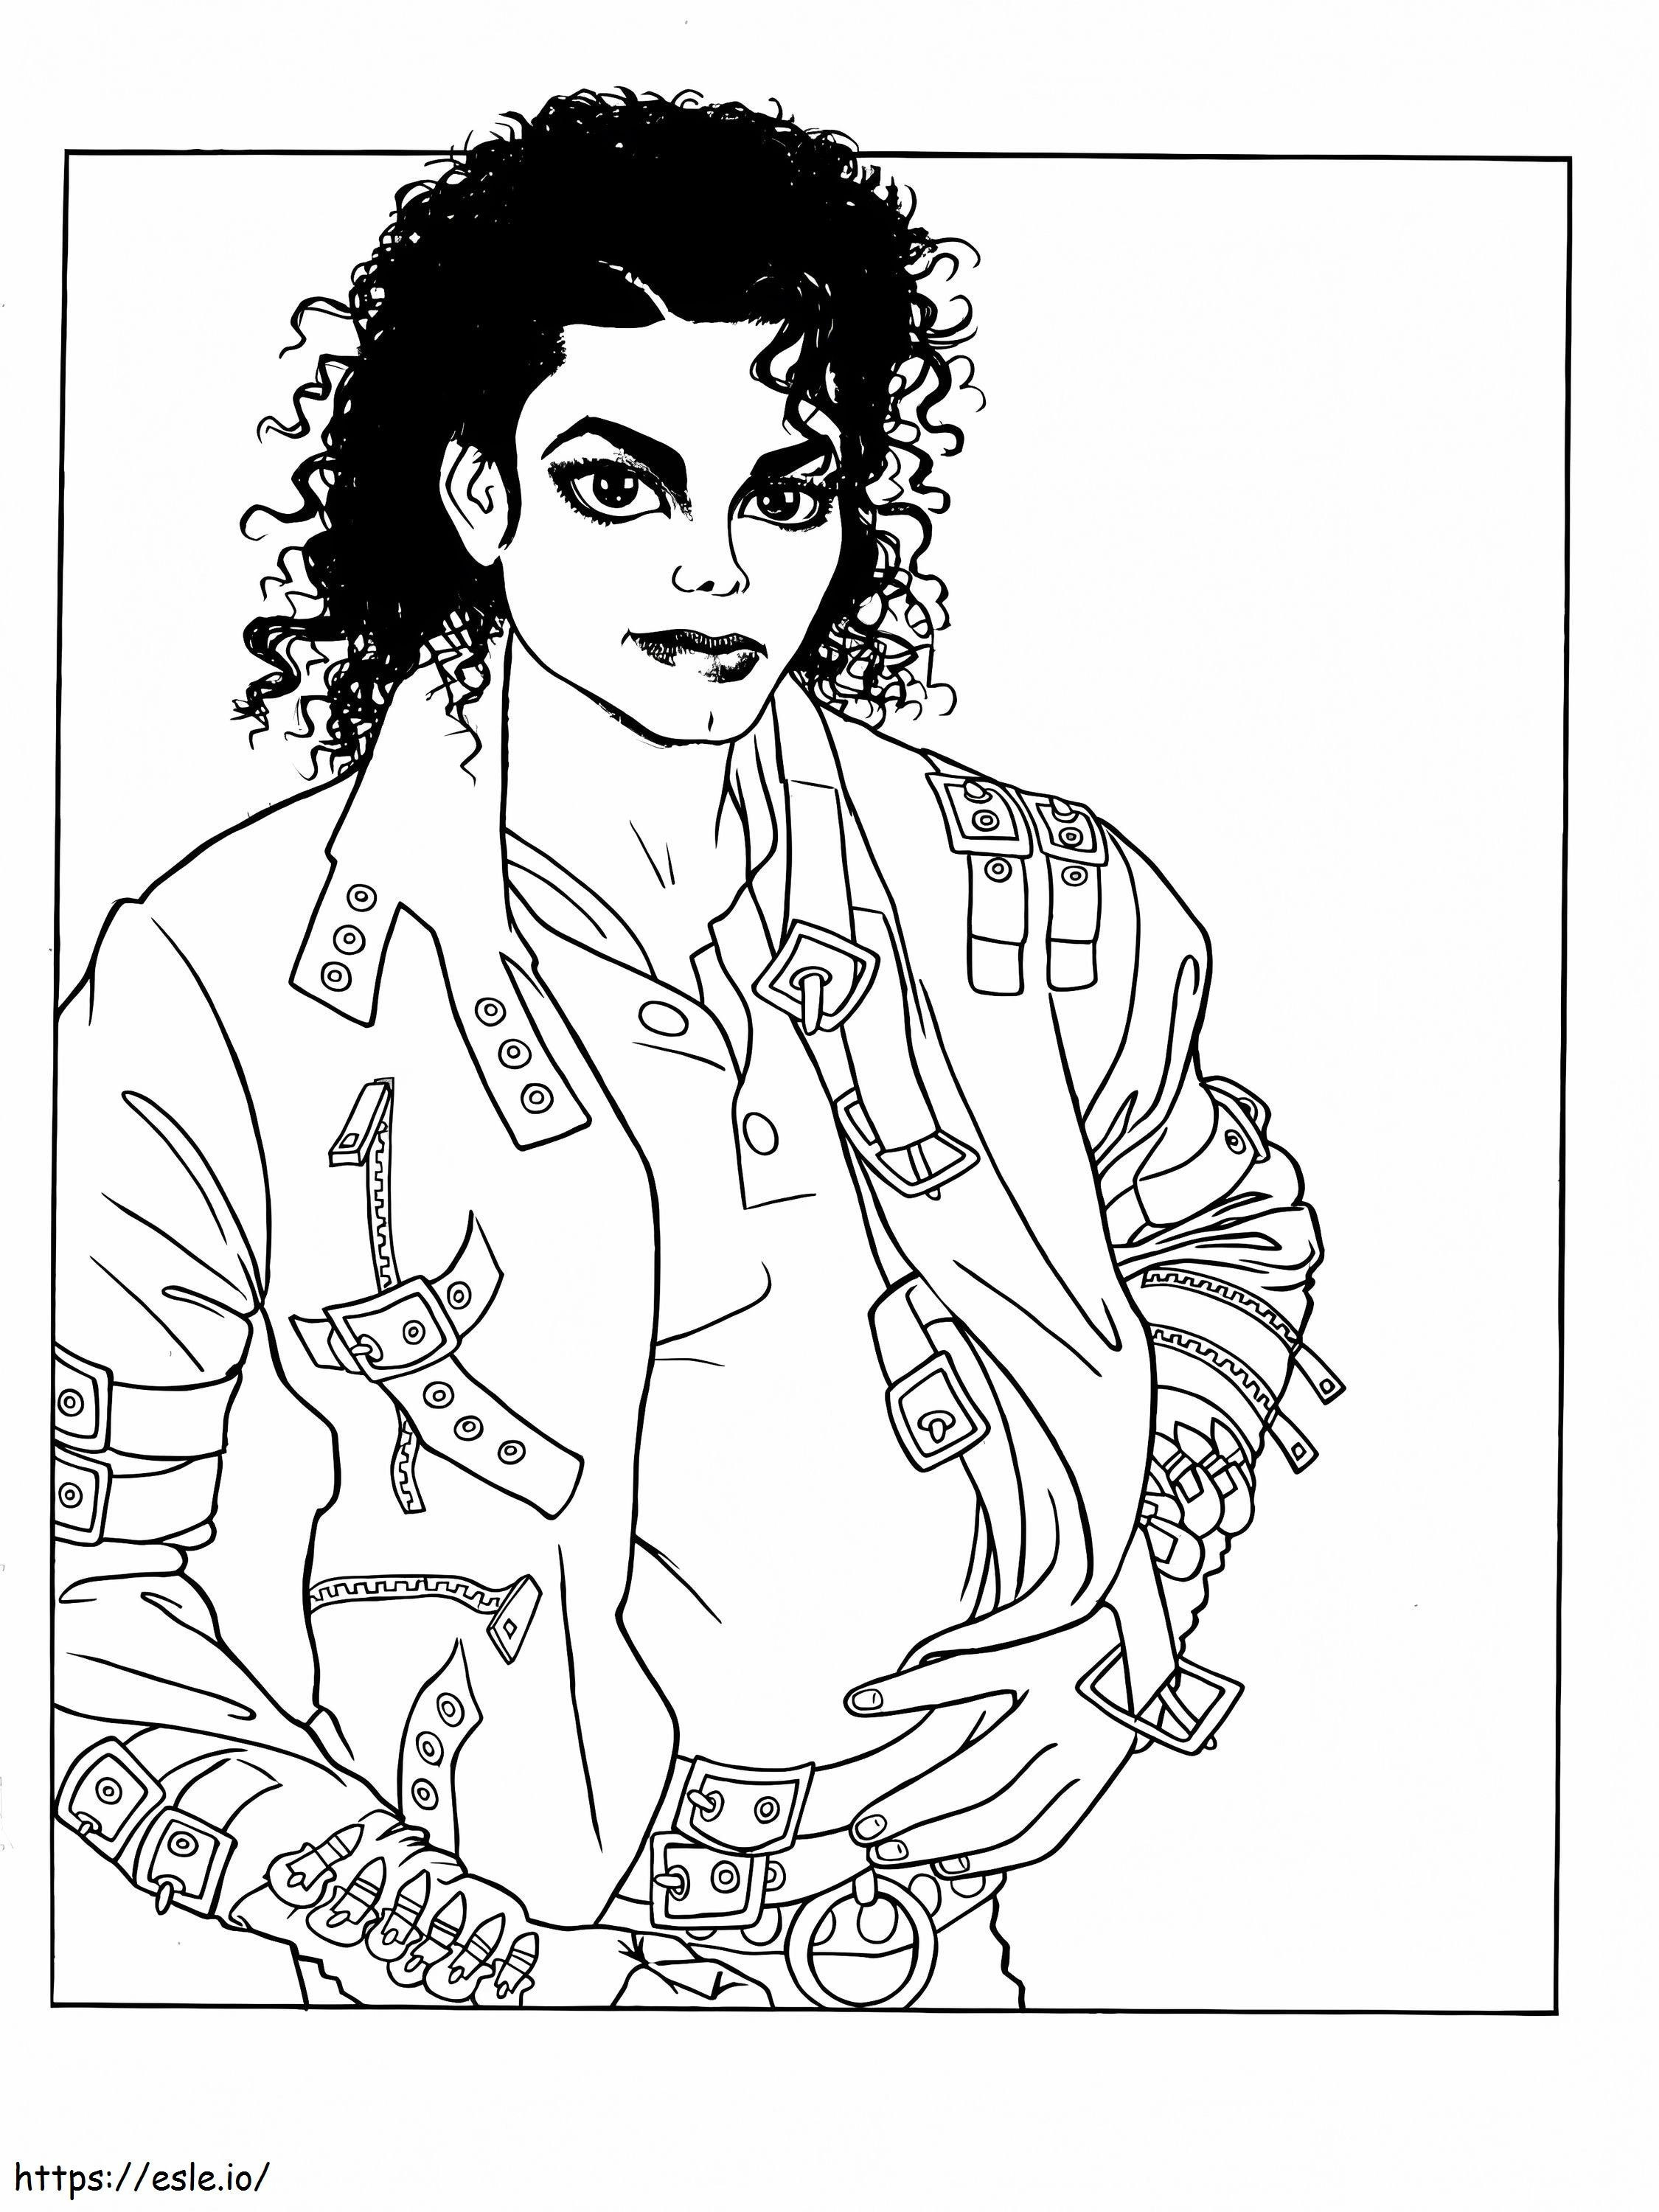 Wejdź do magicznego świata Michaela Jacksona kolorowanka